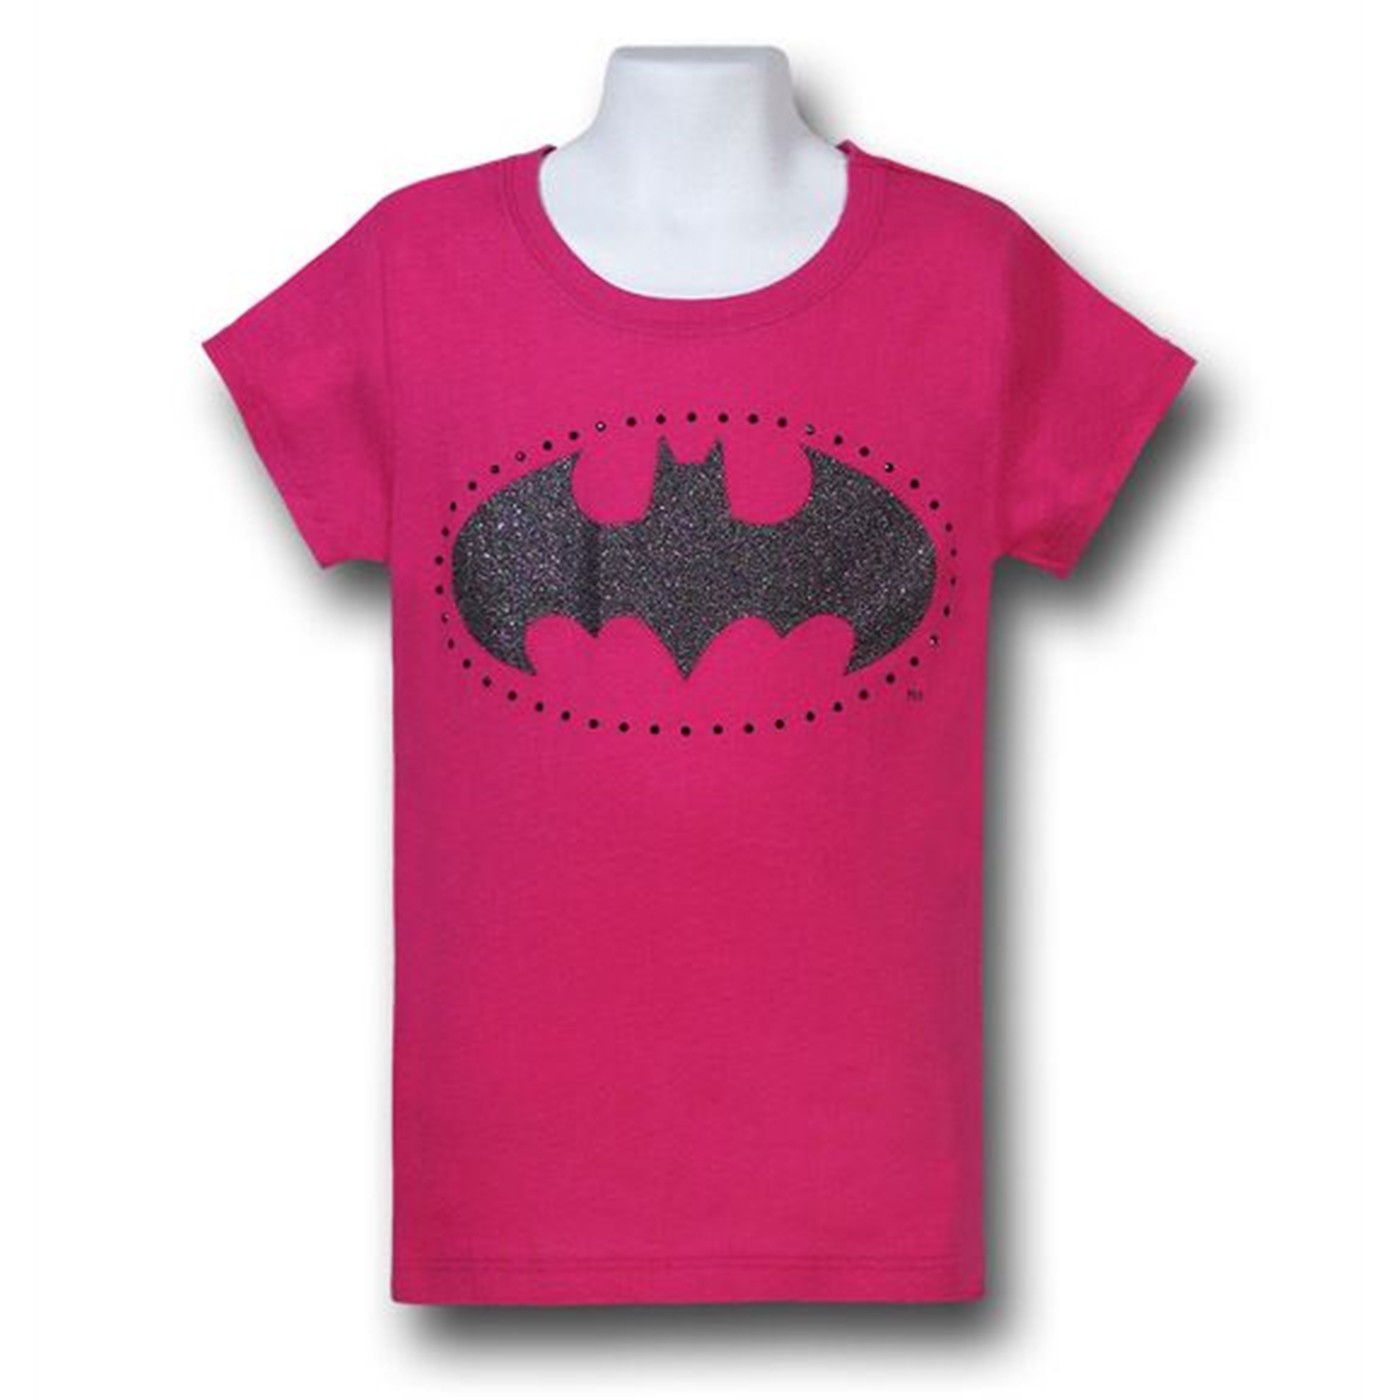 batman logo t shirt girls